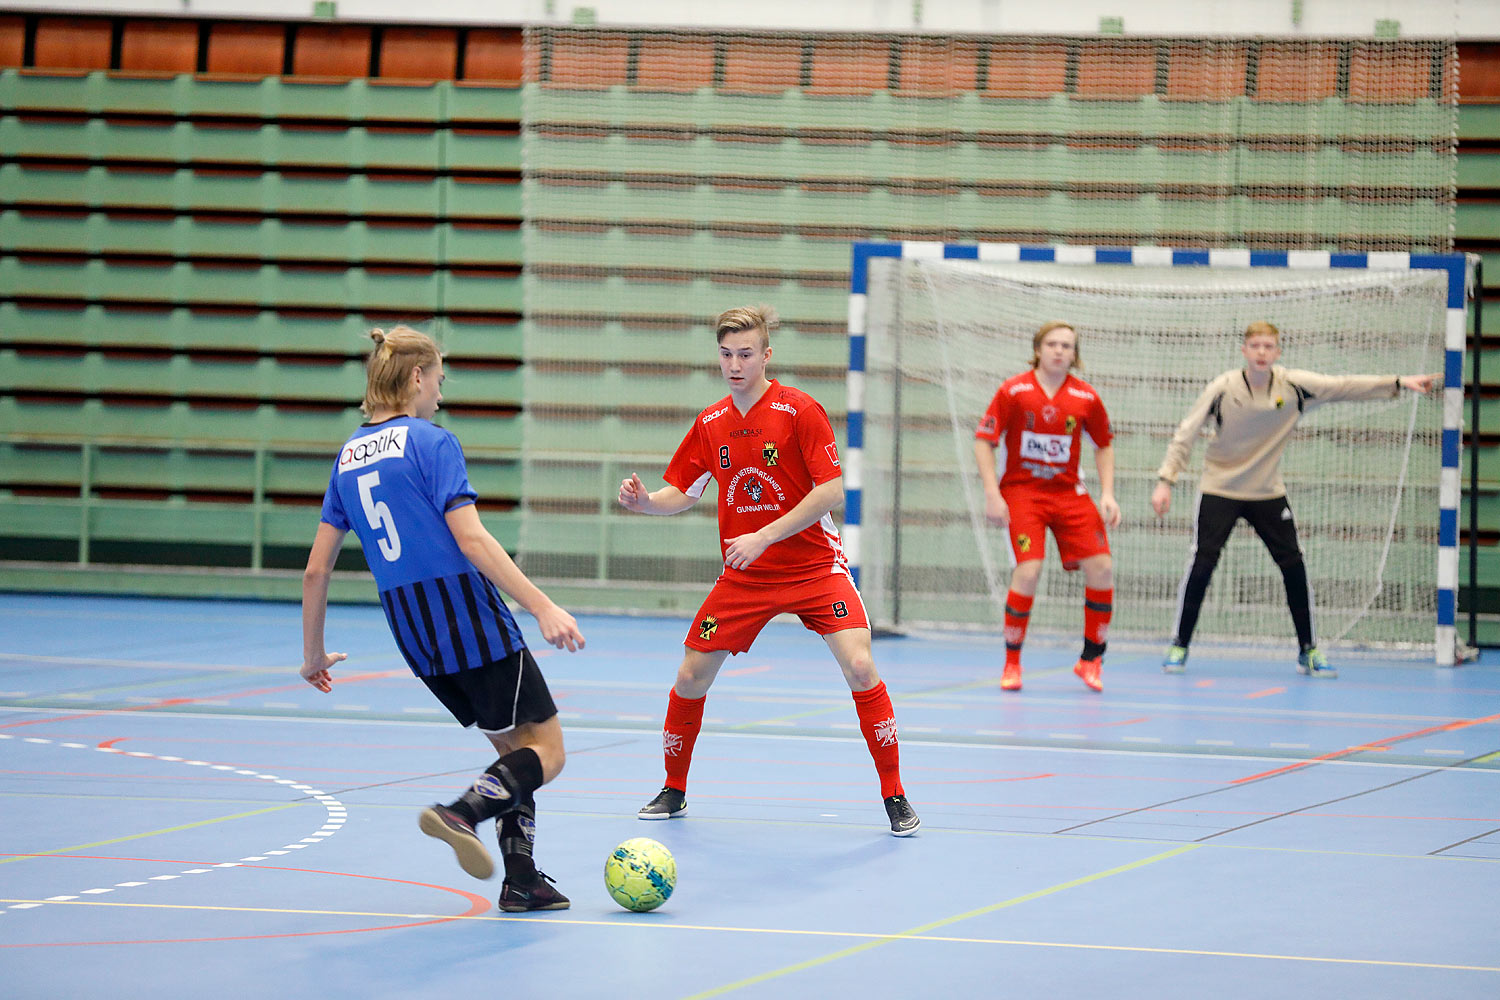 Skövde Futsalcup Herrjuniorer Ulricehamns IFK-Töreboda IK,herr,Arena Skövde,Skövde,Sverige,Skövde Futsalcup 2016,Futsal,2016,141921